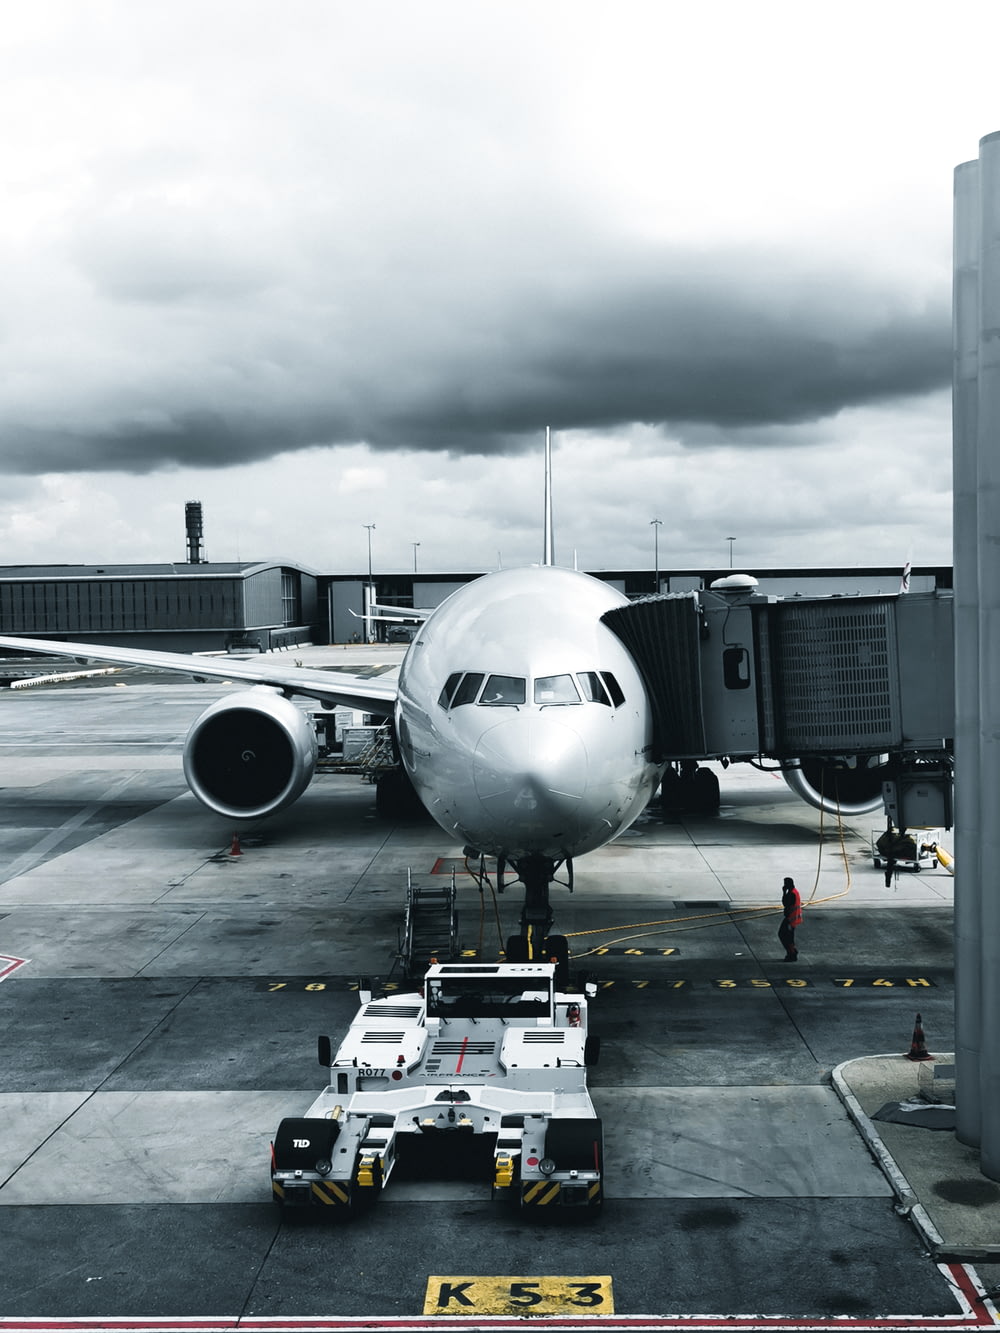 fotografia in scala di grigi dell'aereo passeggeri